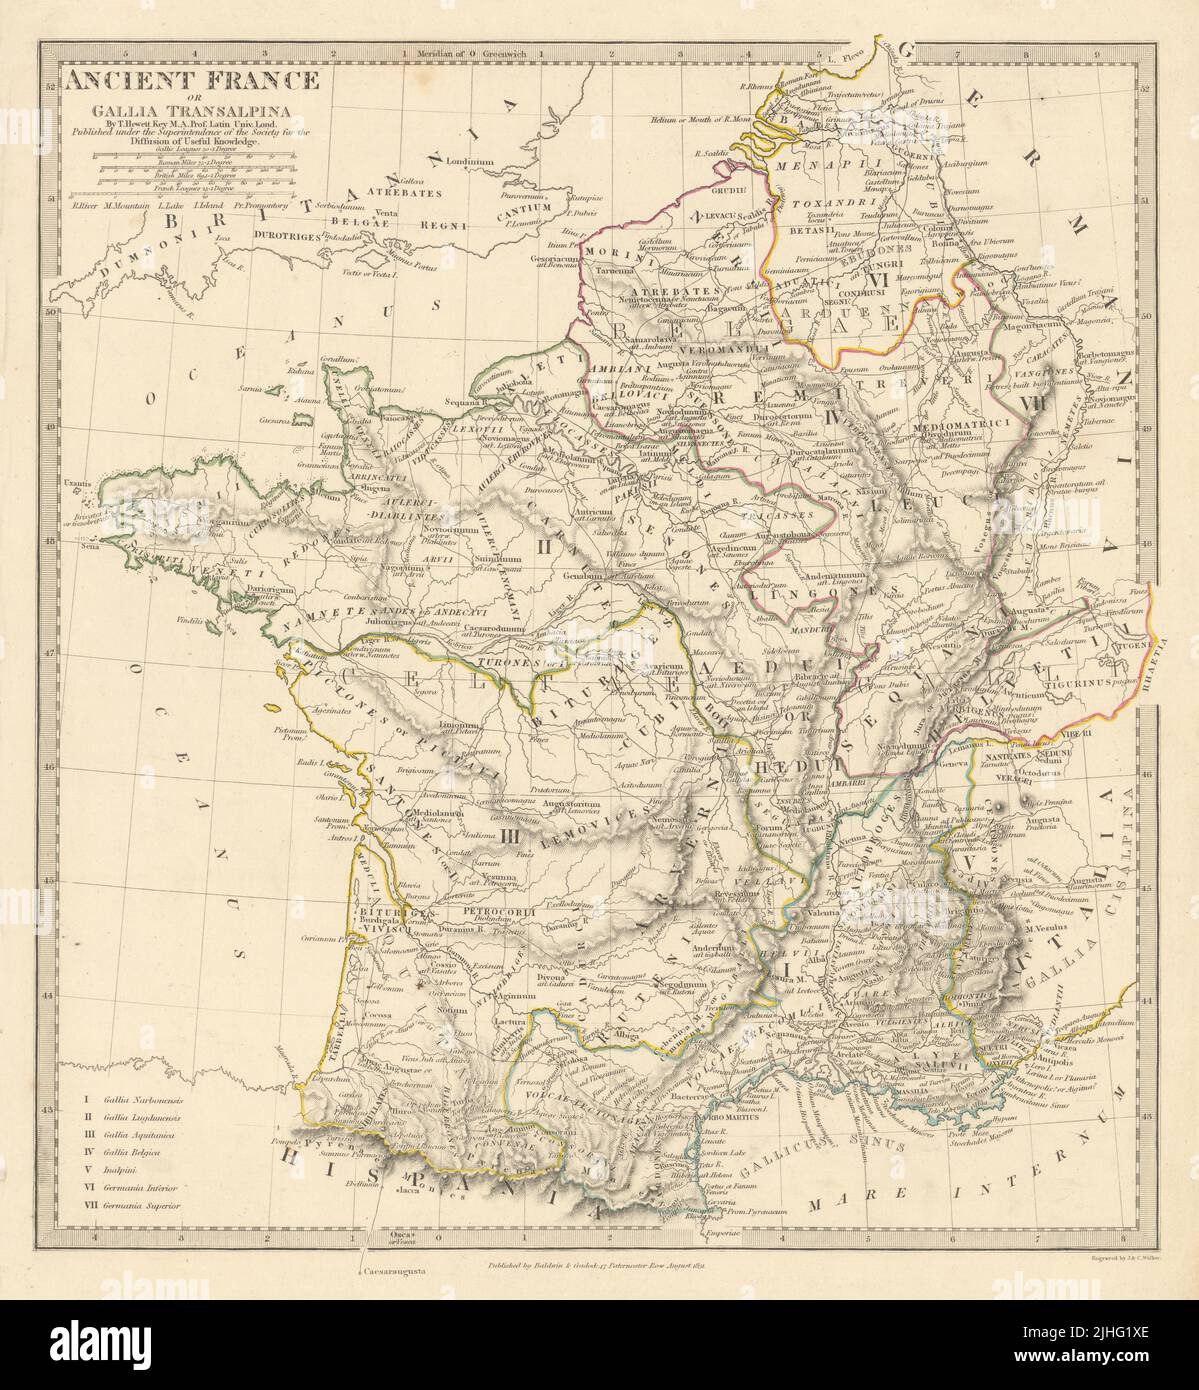 ANTICA ROMANA FRANCIA GALLIA. Gallia Transalpina. Roman nomi Roads.SDUK 1844 mappa Foto Stock